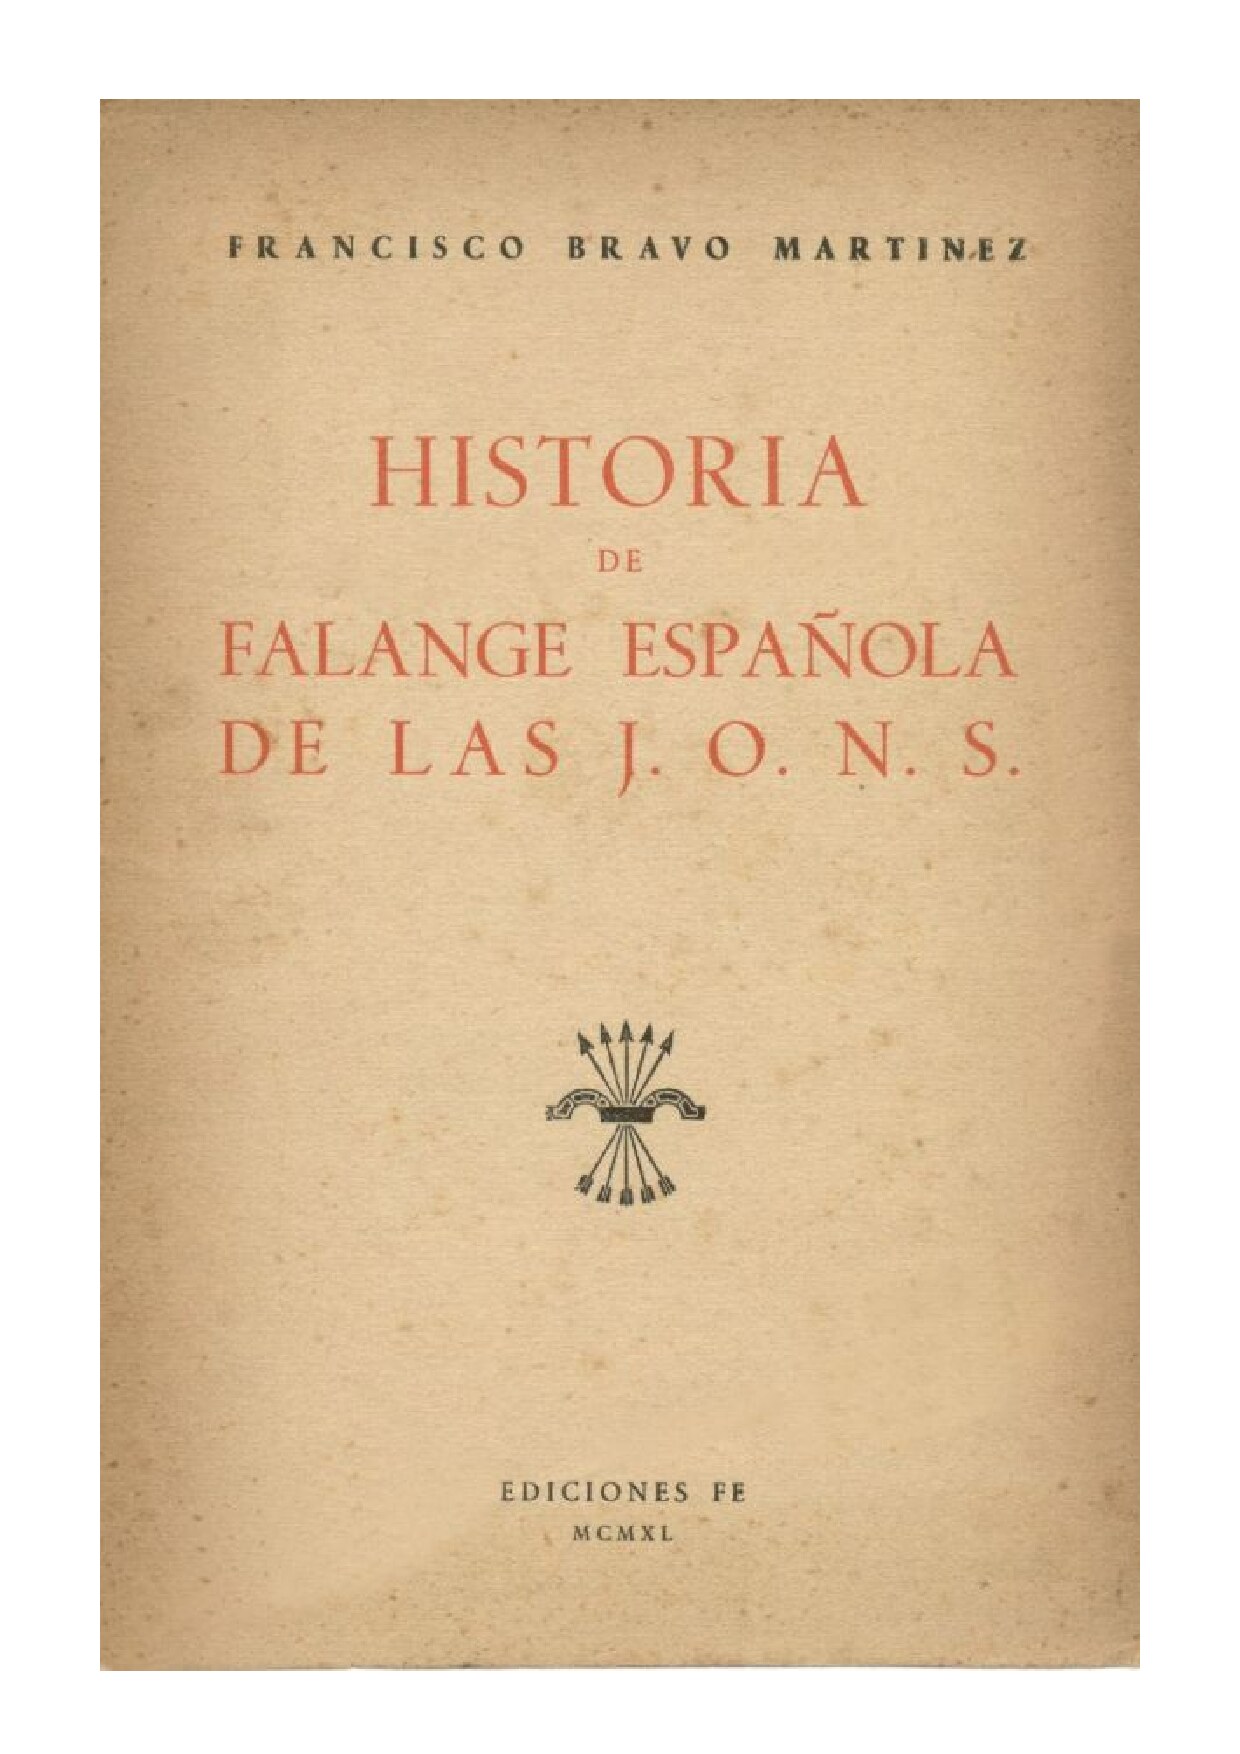 HISTORIA DE FALANGE ESPAOLA DE LAS J. O. N. S.